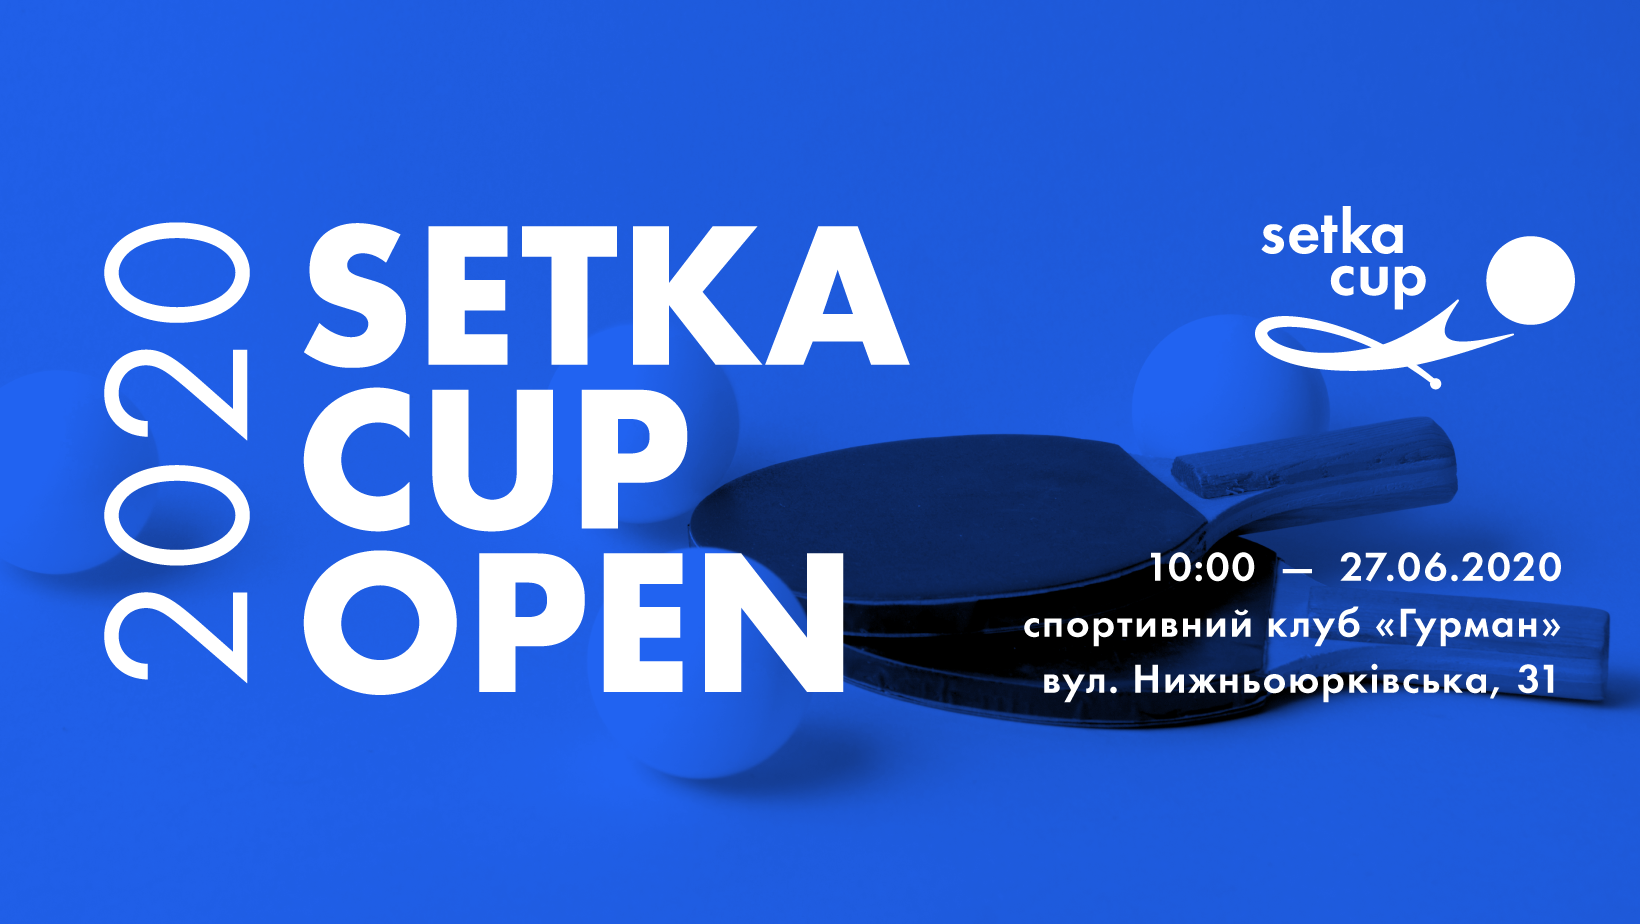 Вперше в Україні відбудеться некомерційний турнір з настільного тенісу Setka Cup Open 2020